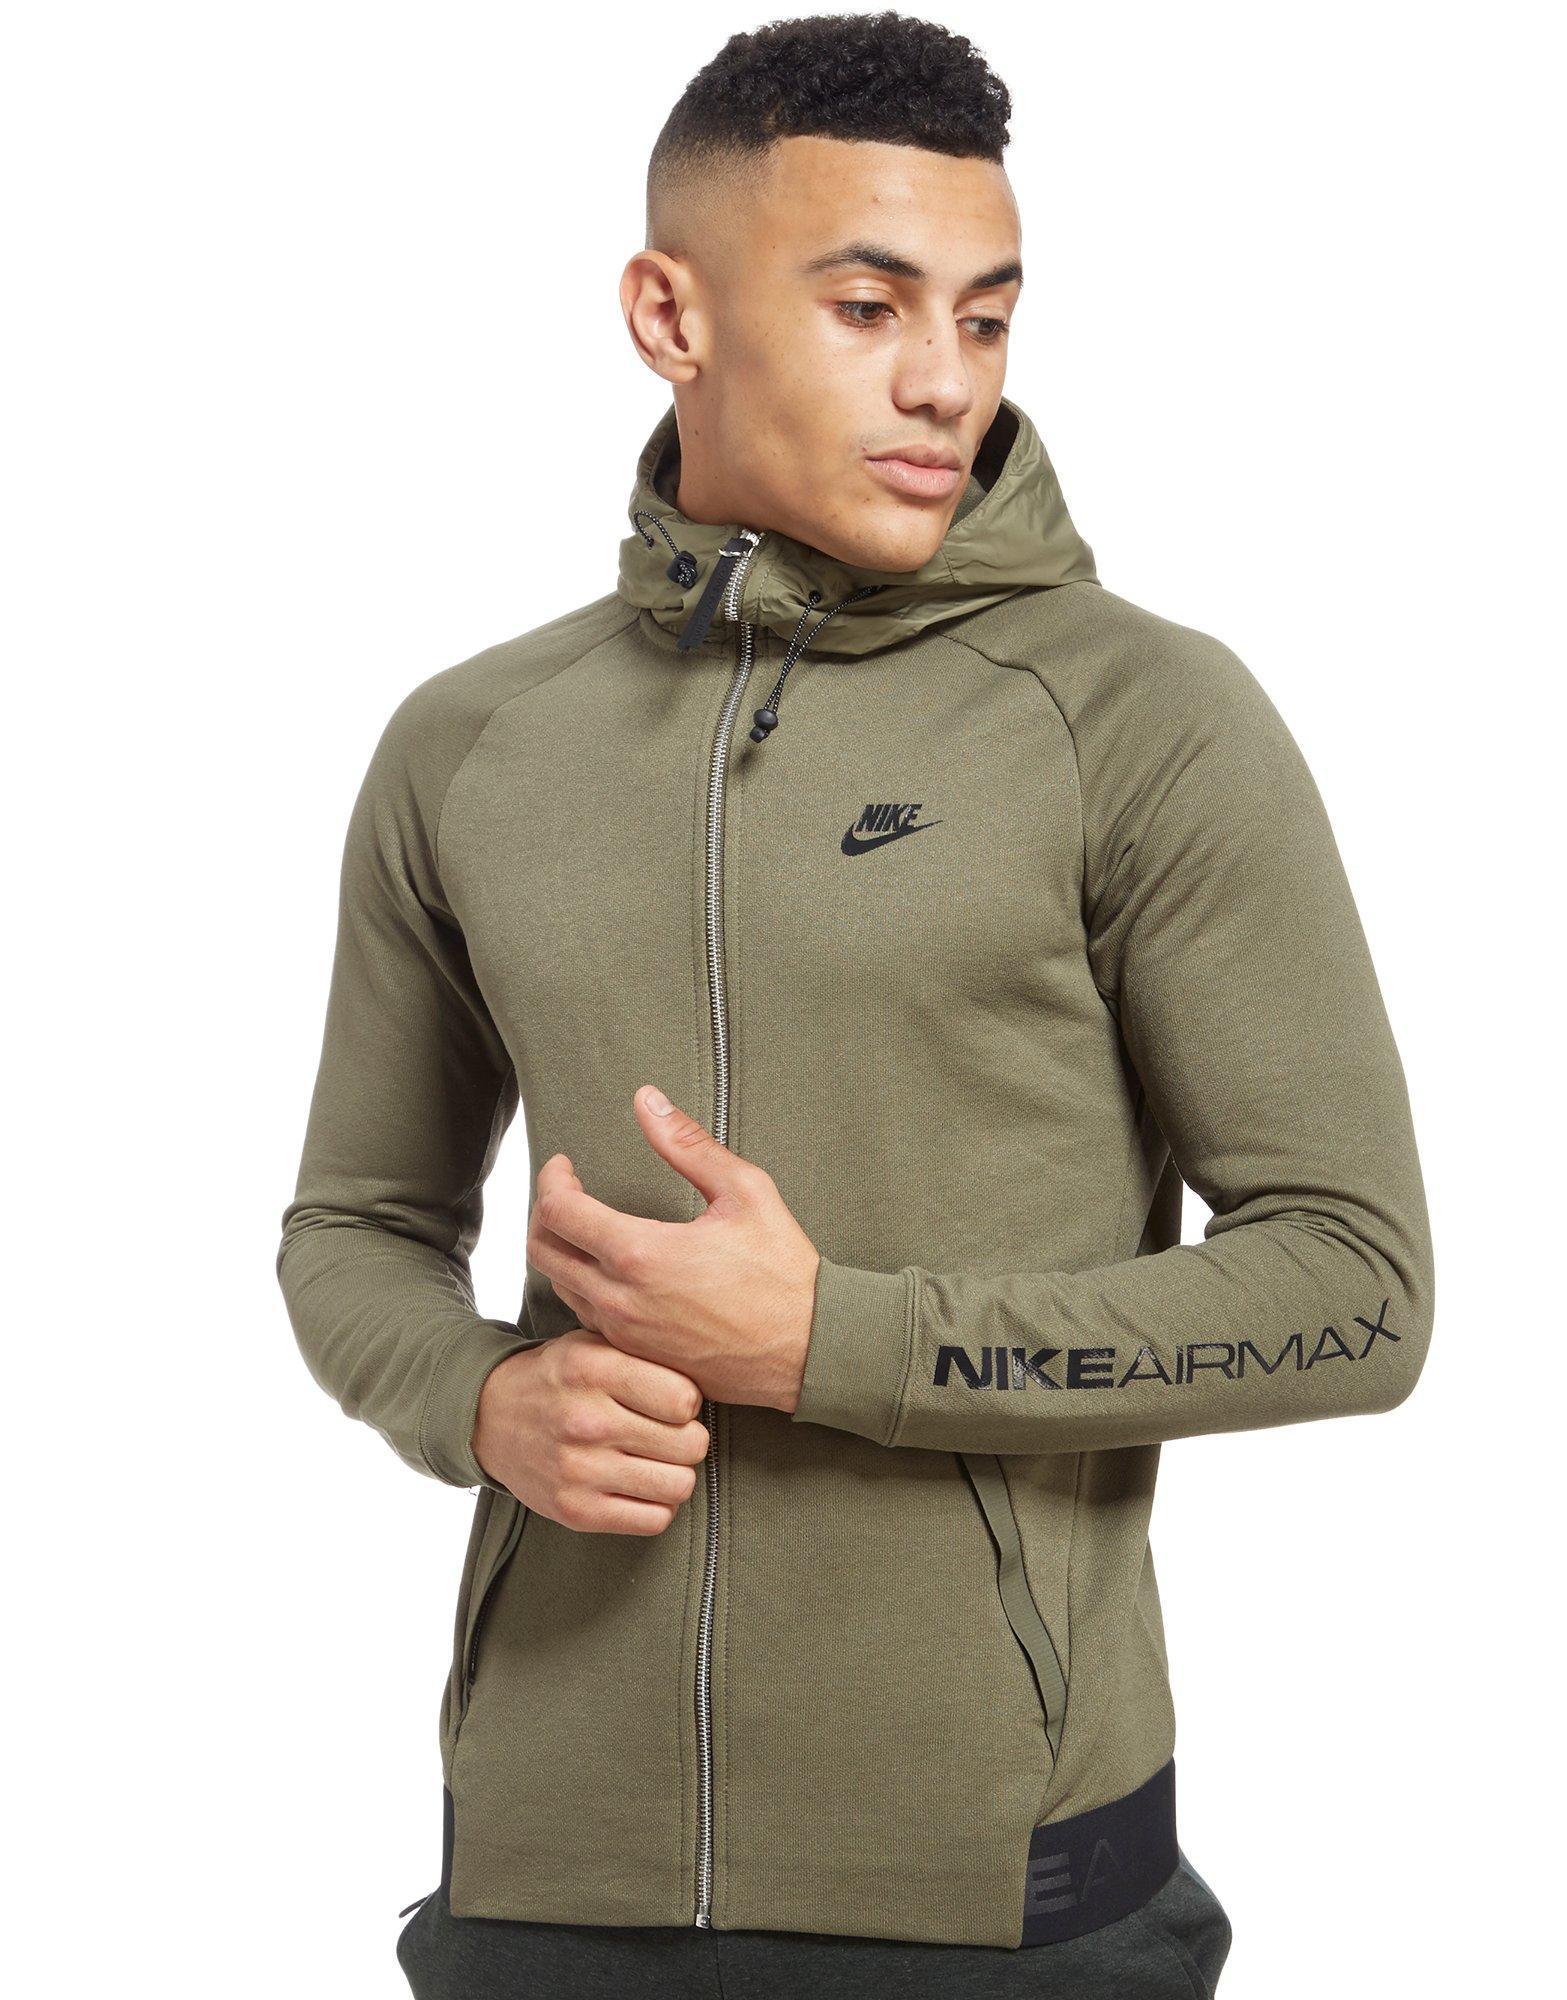 Lyst - Nike Air Max Full Zip Hoodie in Green for Men